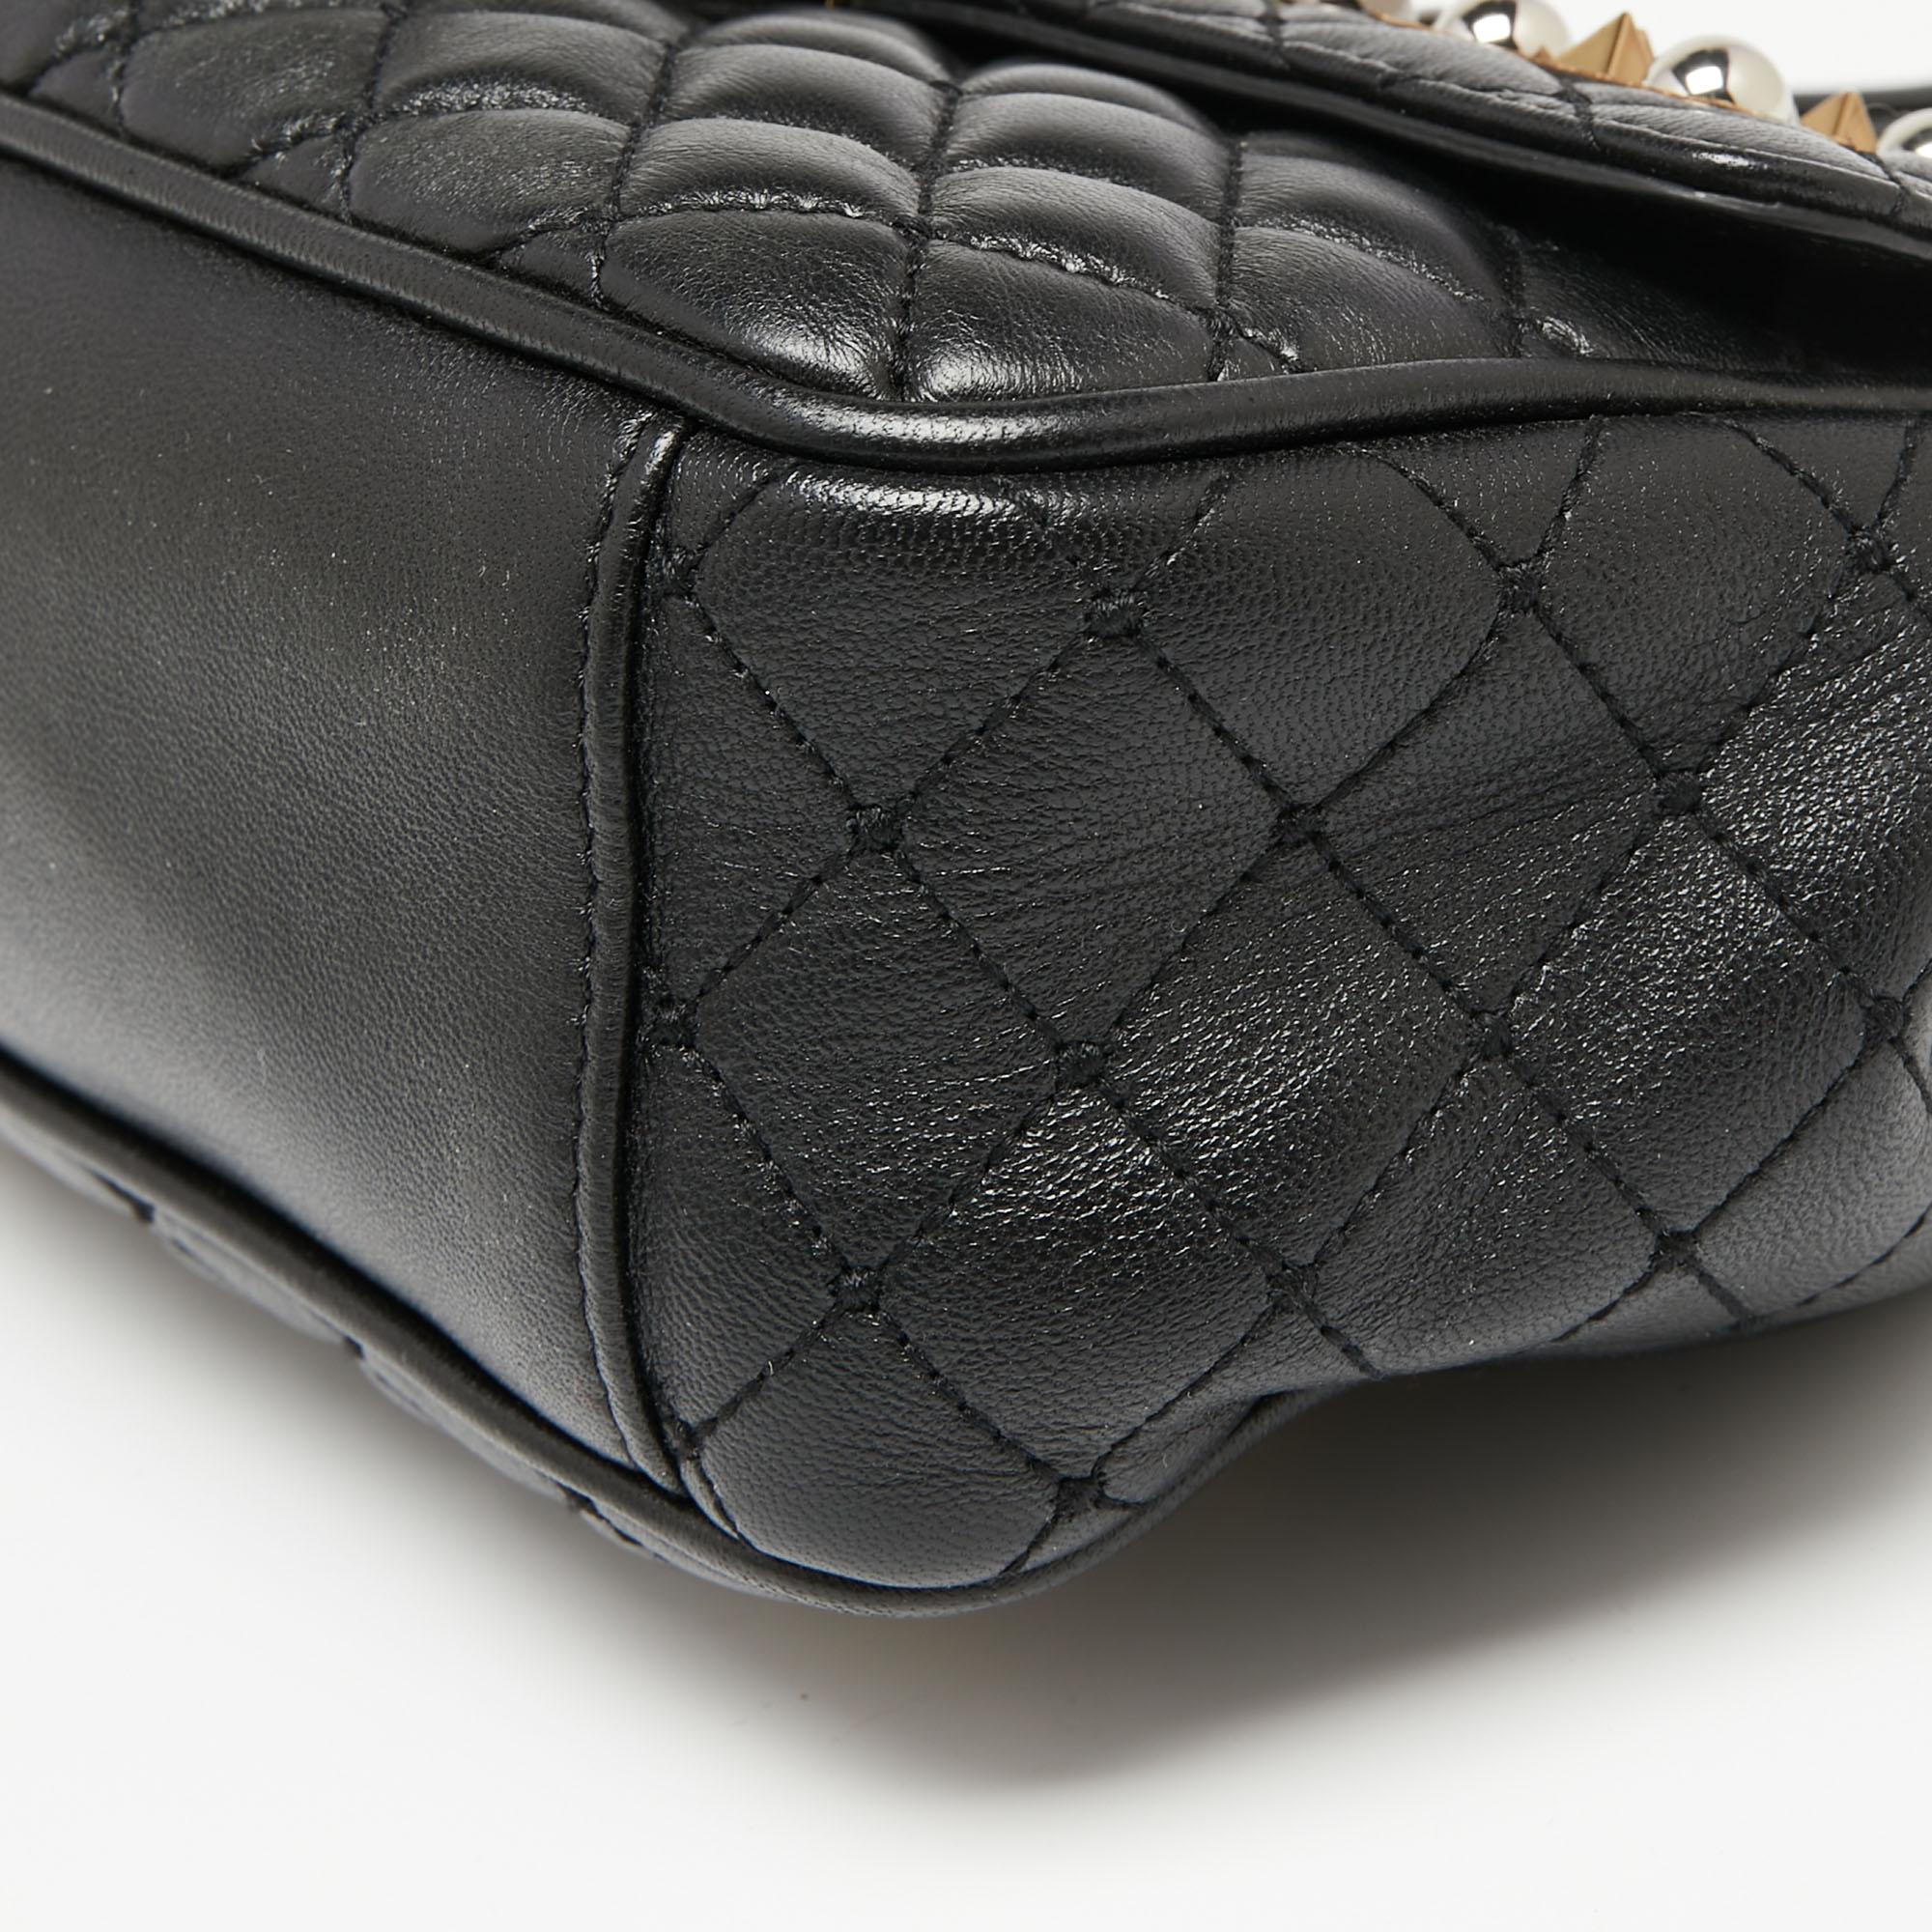 Dolce & Gabbana Black Quilted Leather Lucia Embellished Shoulder Bag 5